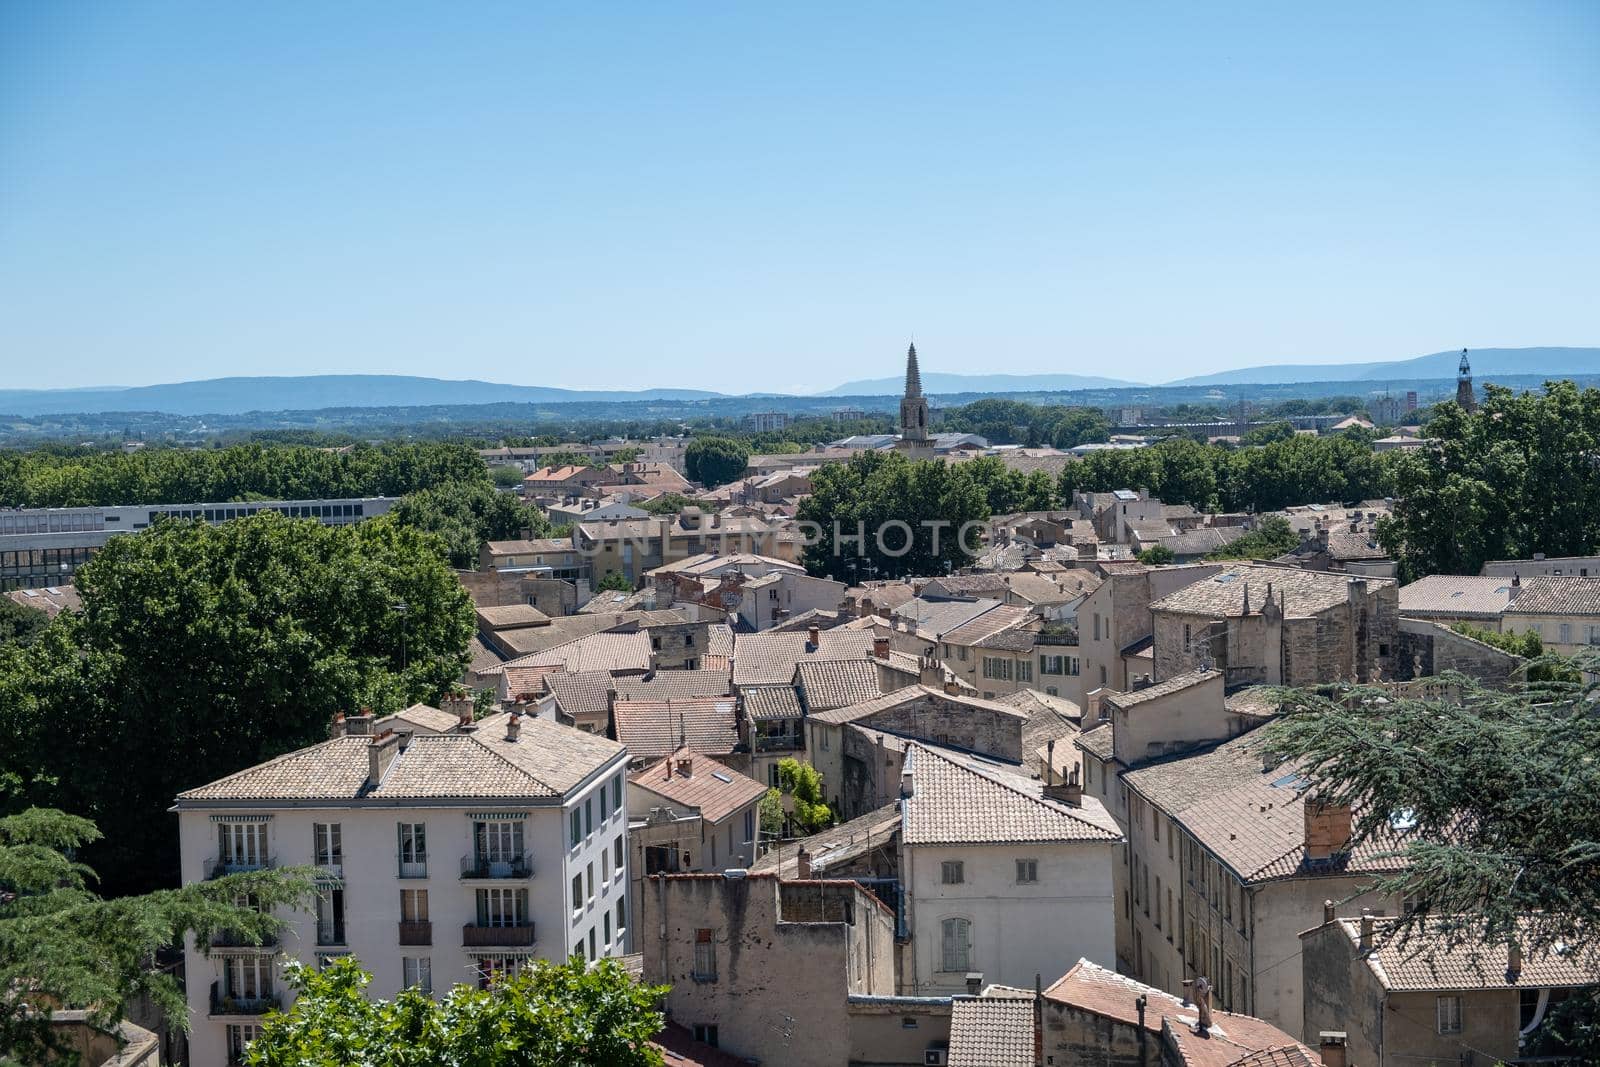 Avignon Southern France, Ancient Popes Palace, Saint-Benezet, Avignon, Provence, France by fokkebok